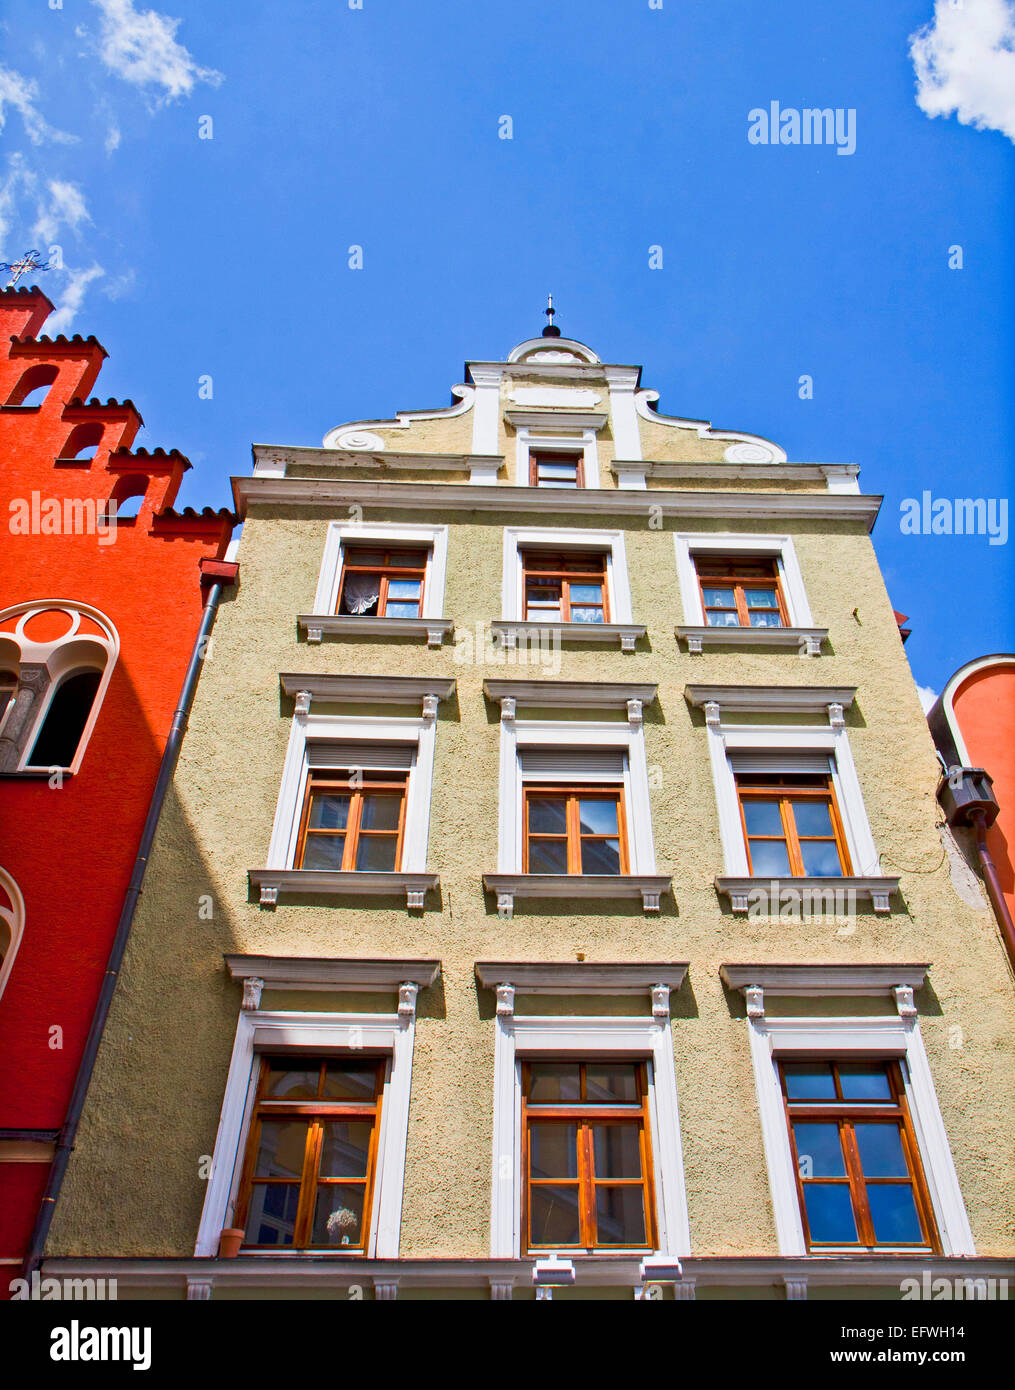 Tipiche Case in Landshut in architettura rinascimentale di stile e colori vivaci Foto Stock